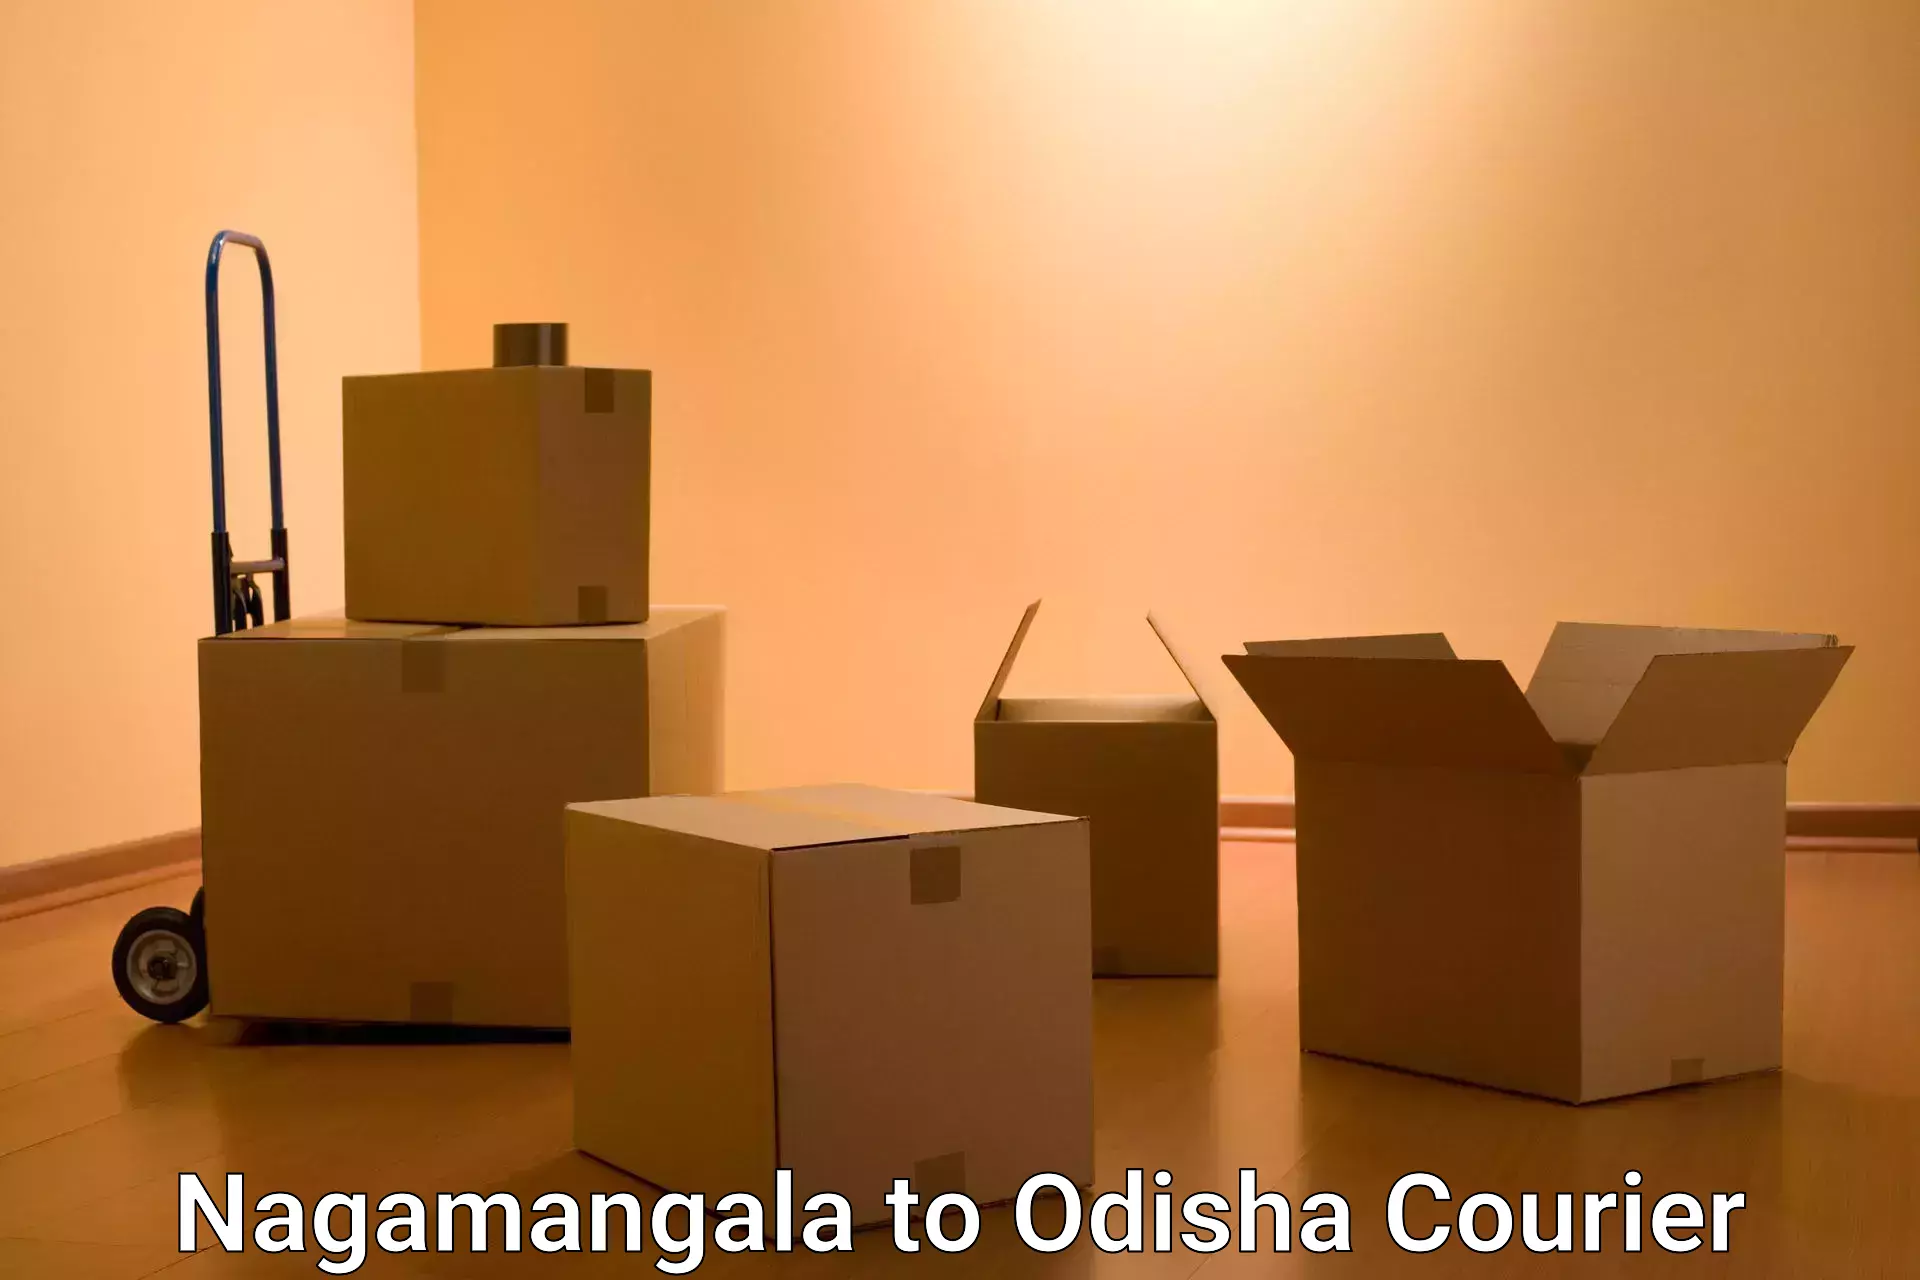 Urgent courier needs Nagamangala to Basta